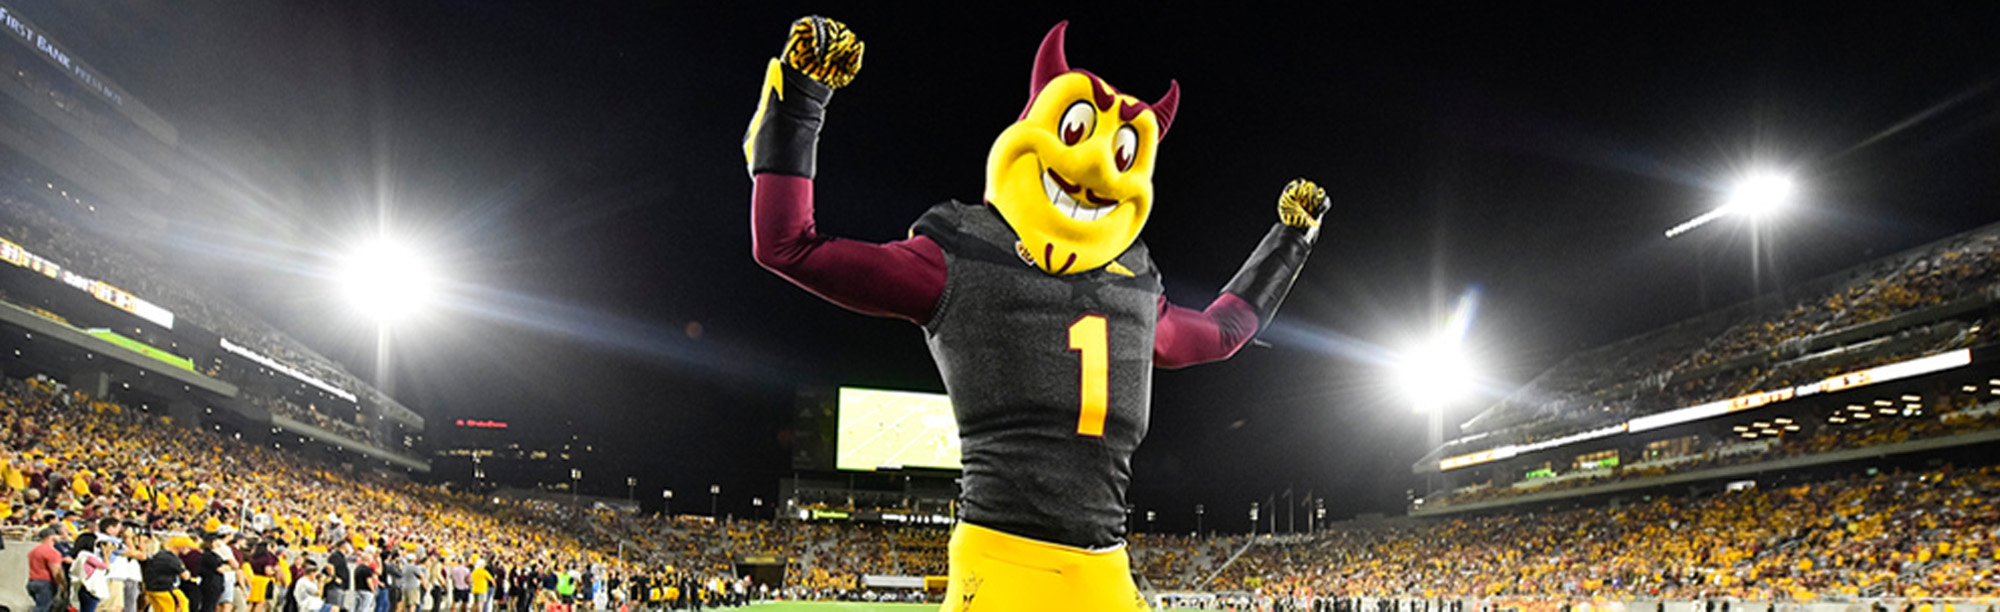 Arizona state University Mascot on Football Field